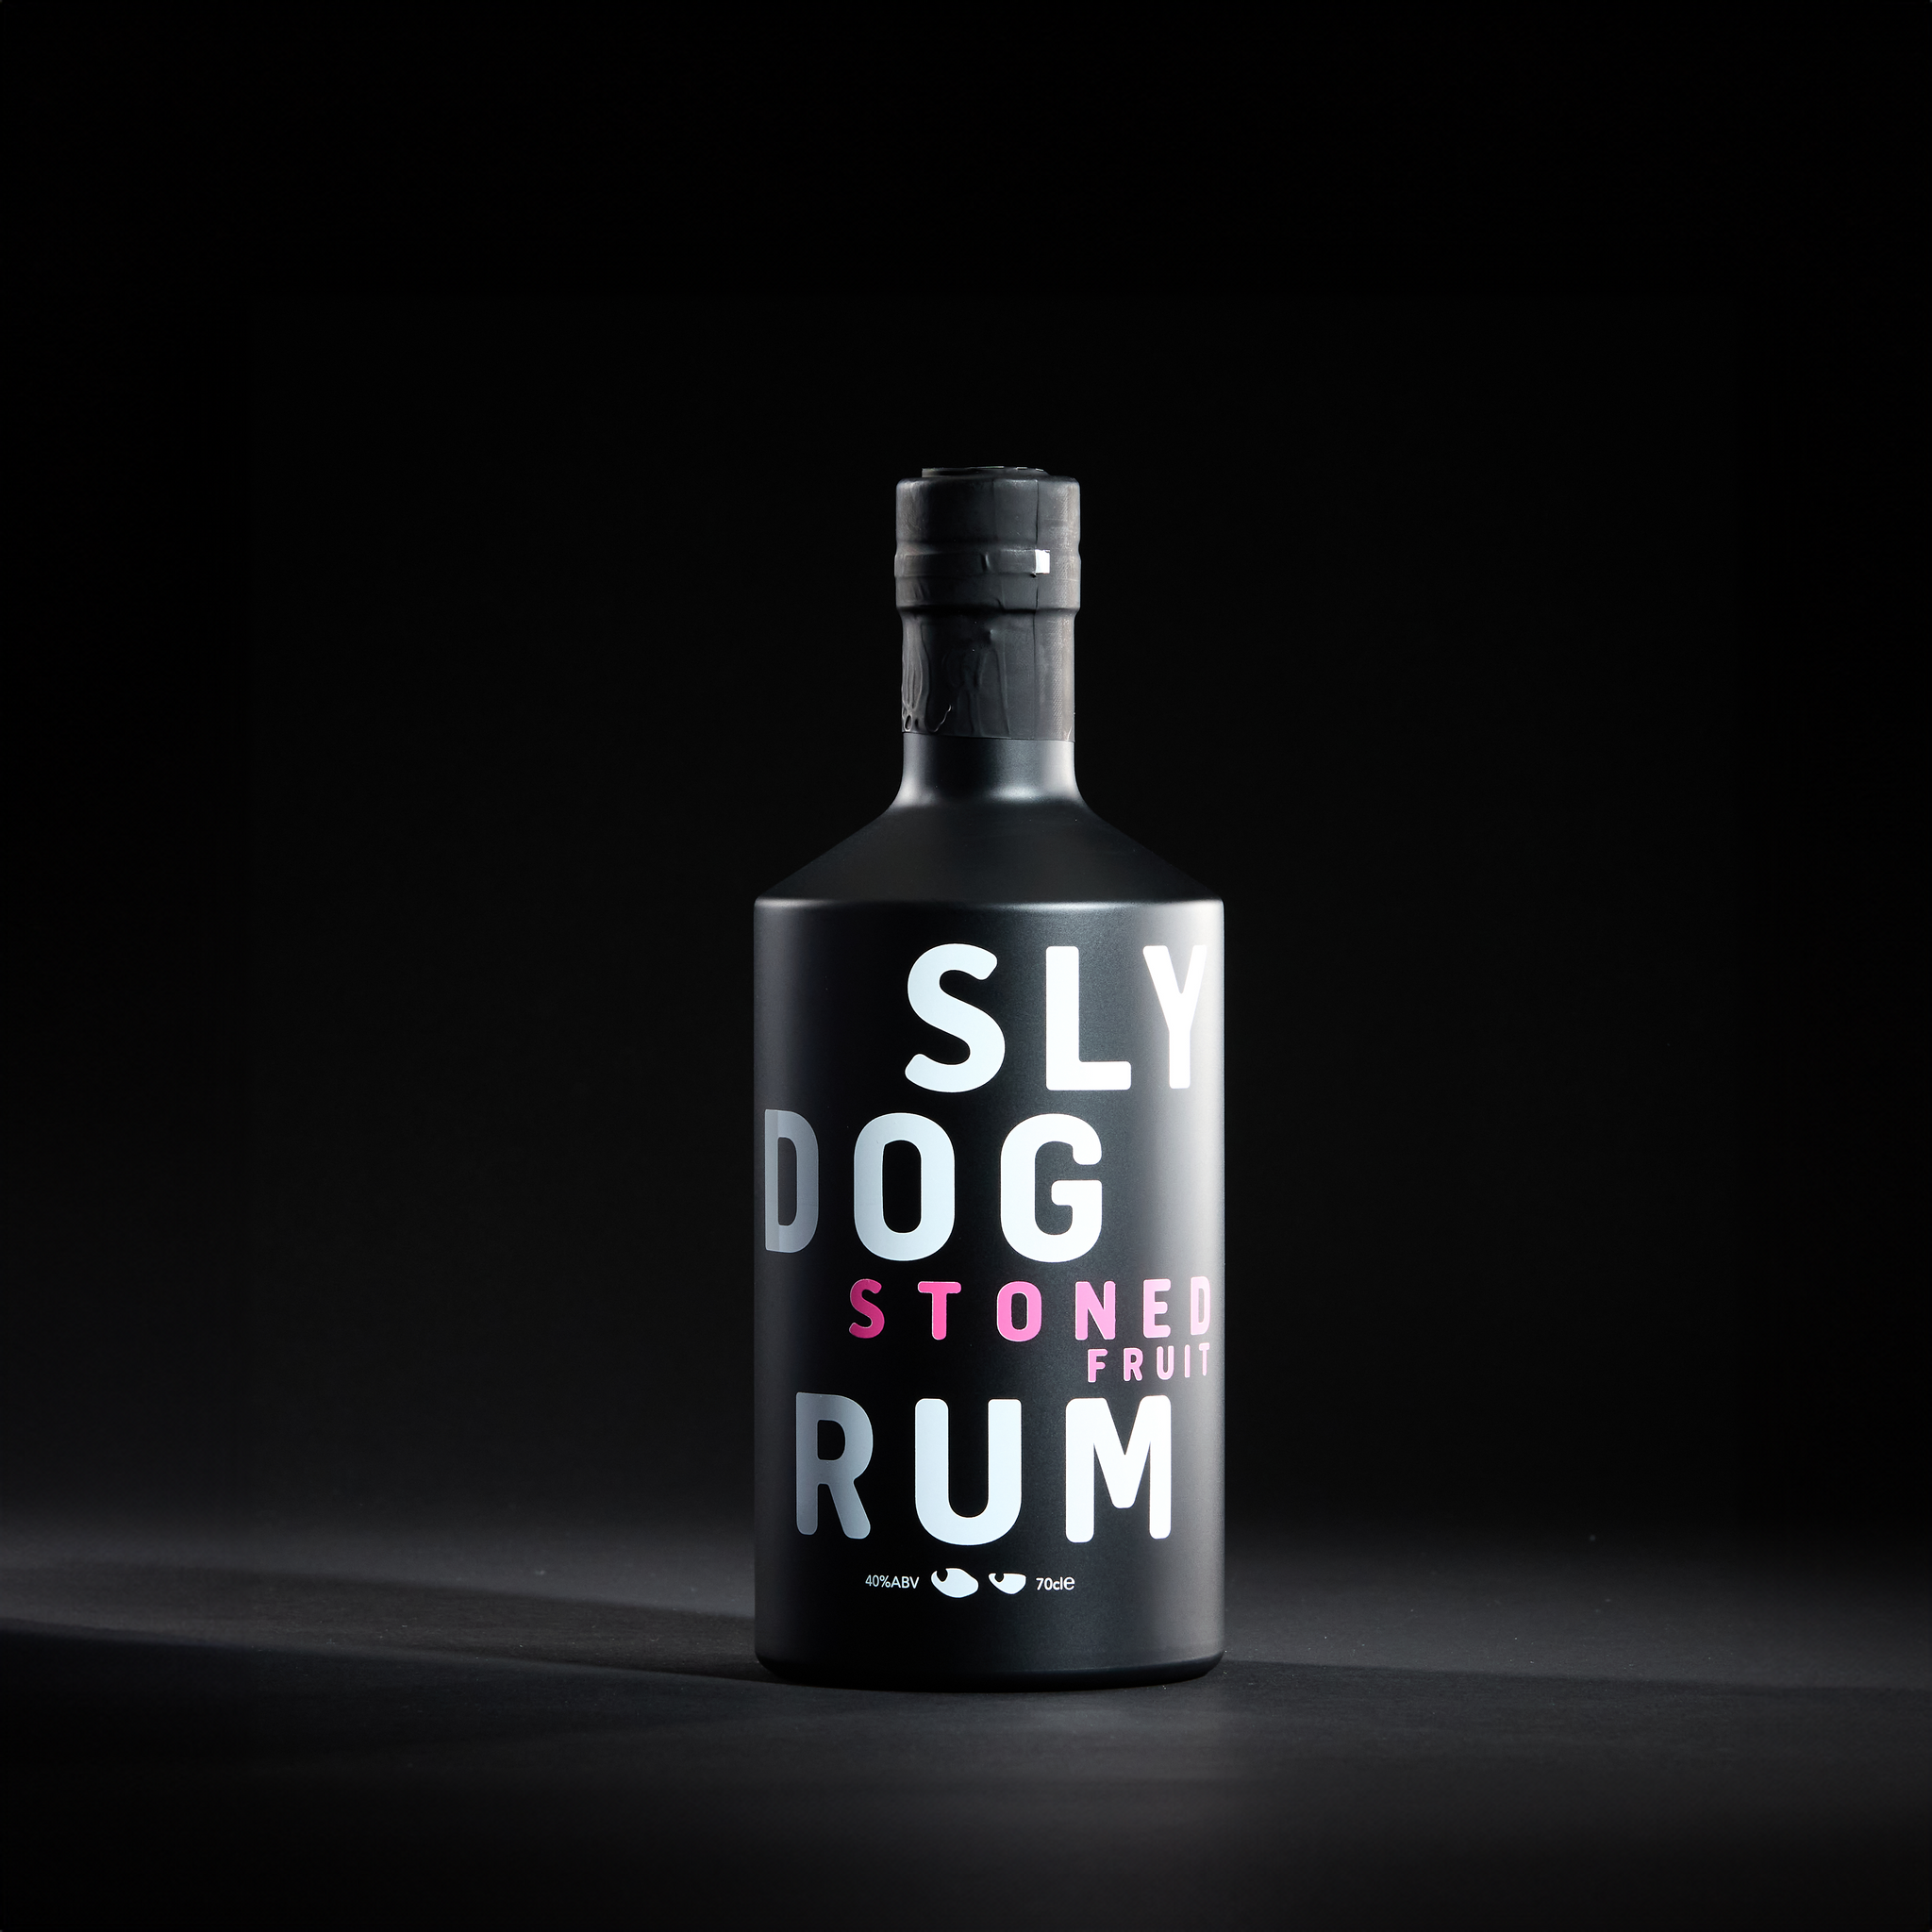 SLY DOG Stoned Fruit Rum